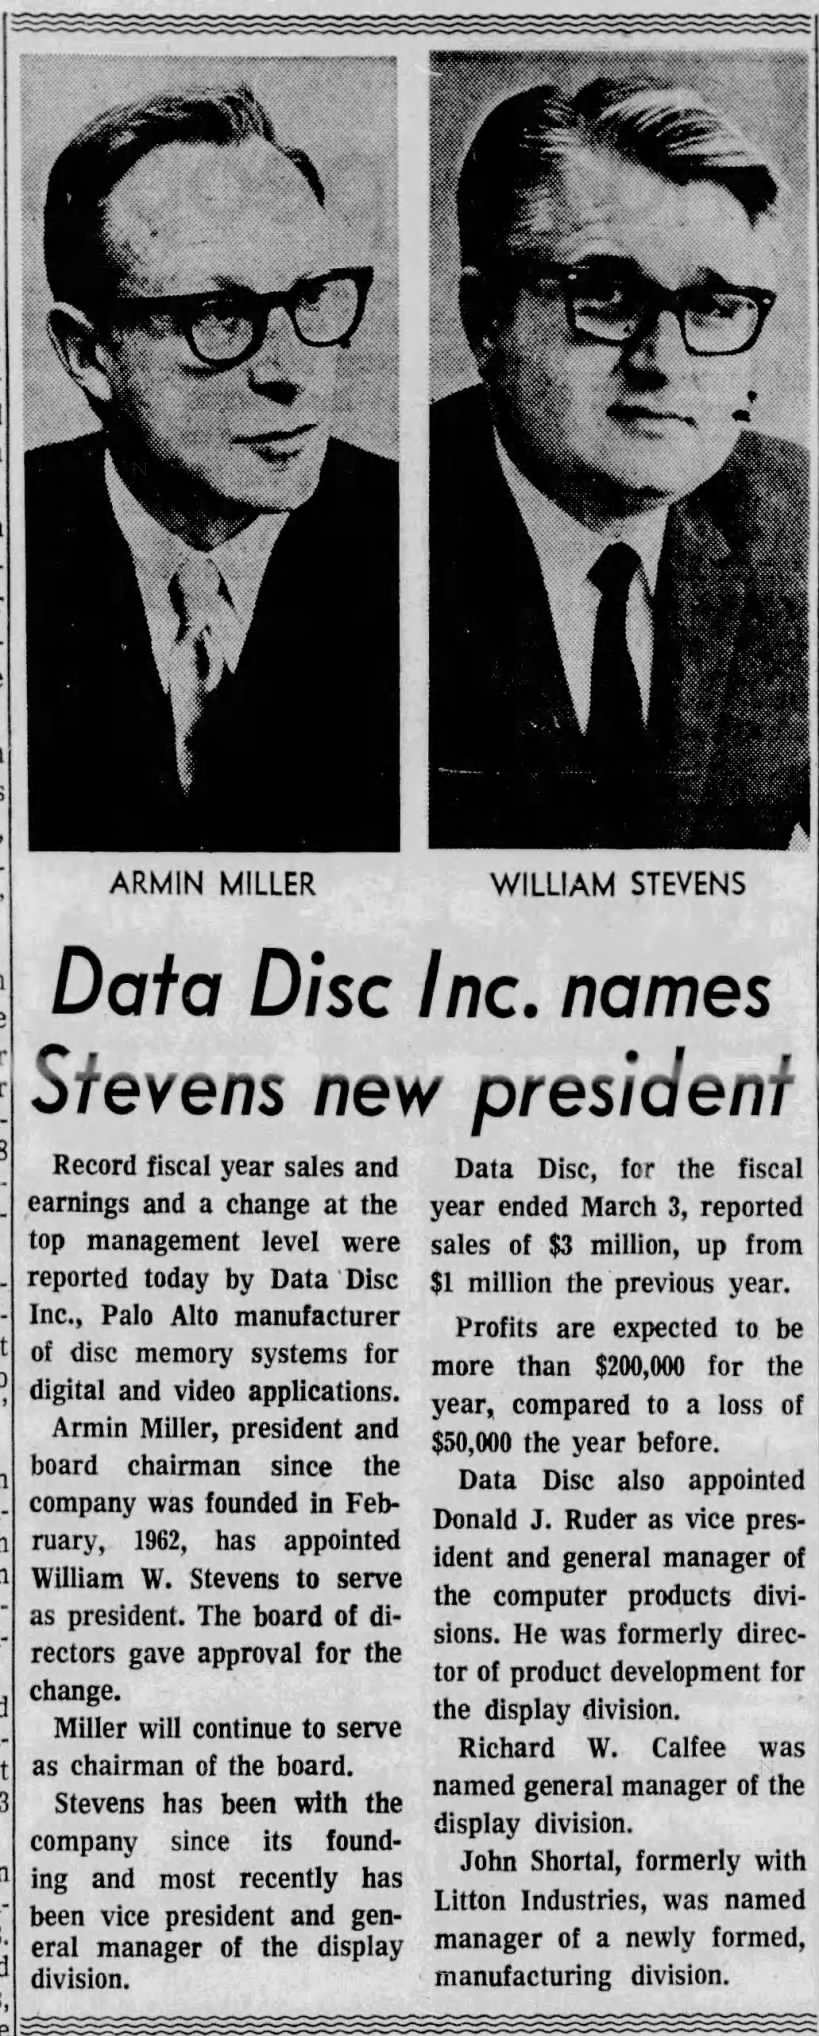 Data Disc Inc. names Stevens new president